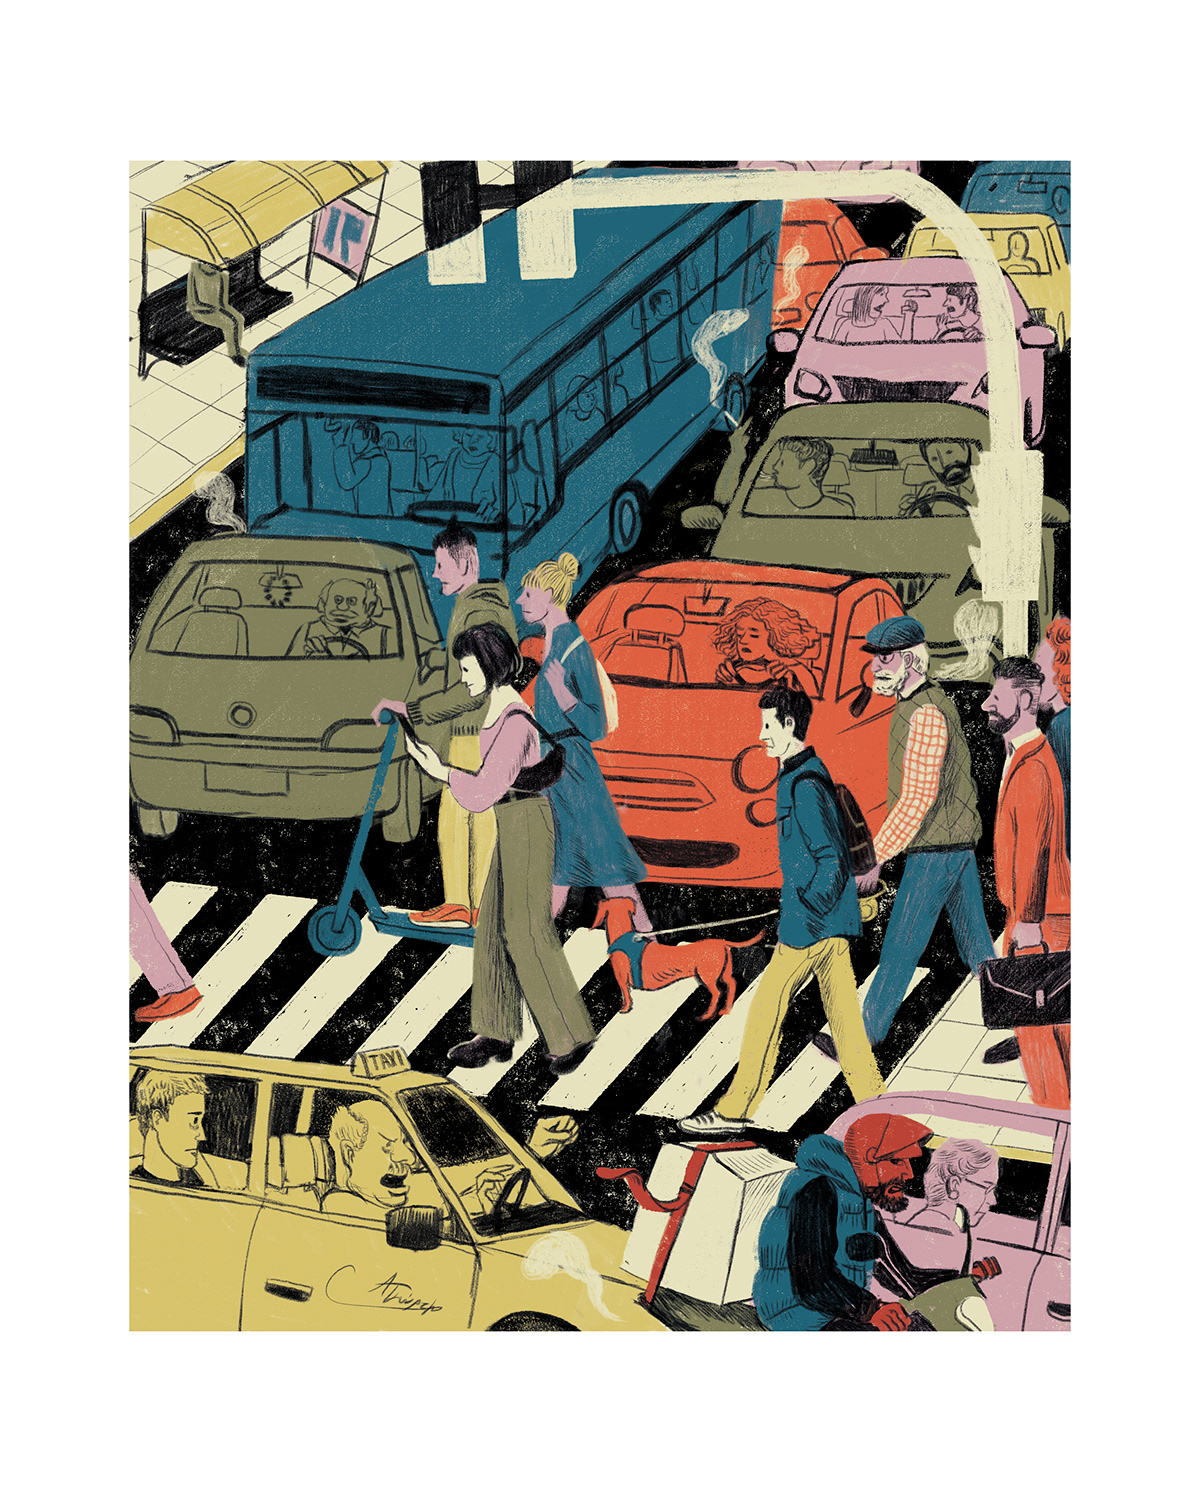 ILLUSTRATION  Editorial Illustration cover illustration urban illustration transportation car traffic city illustration